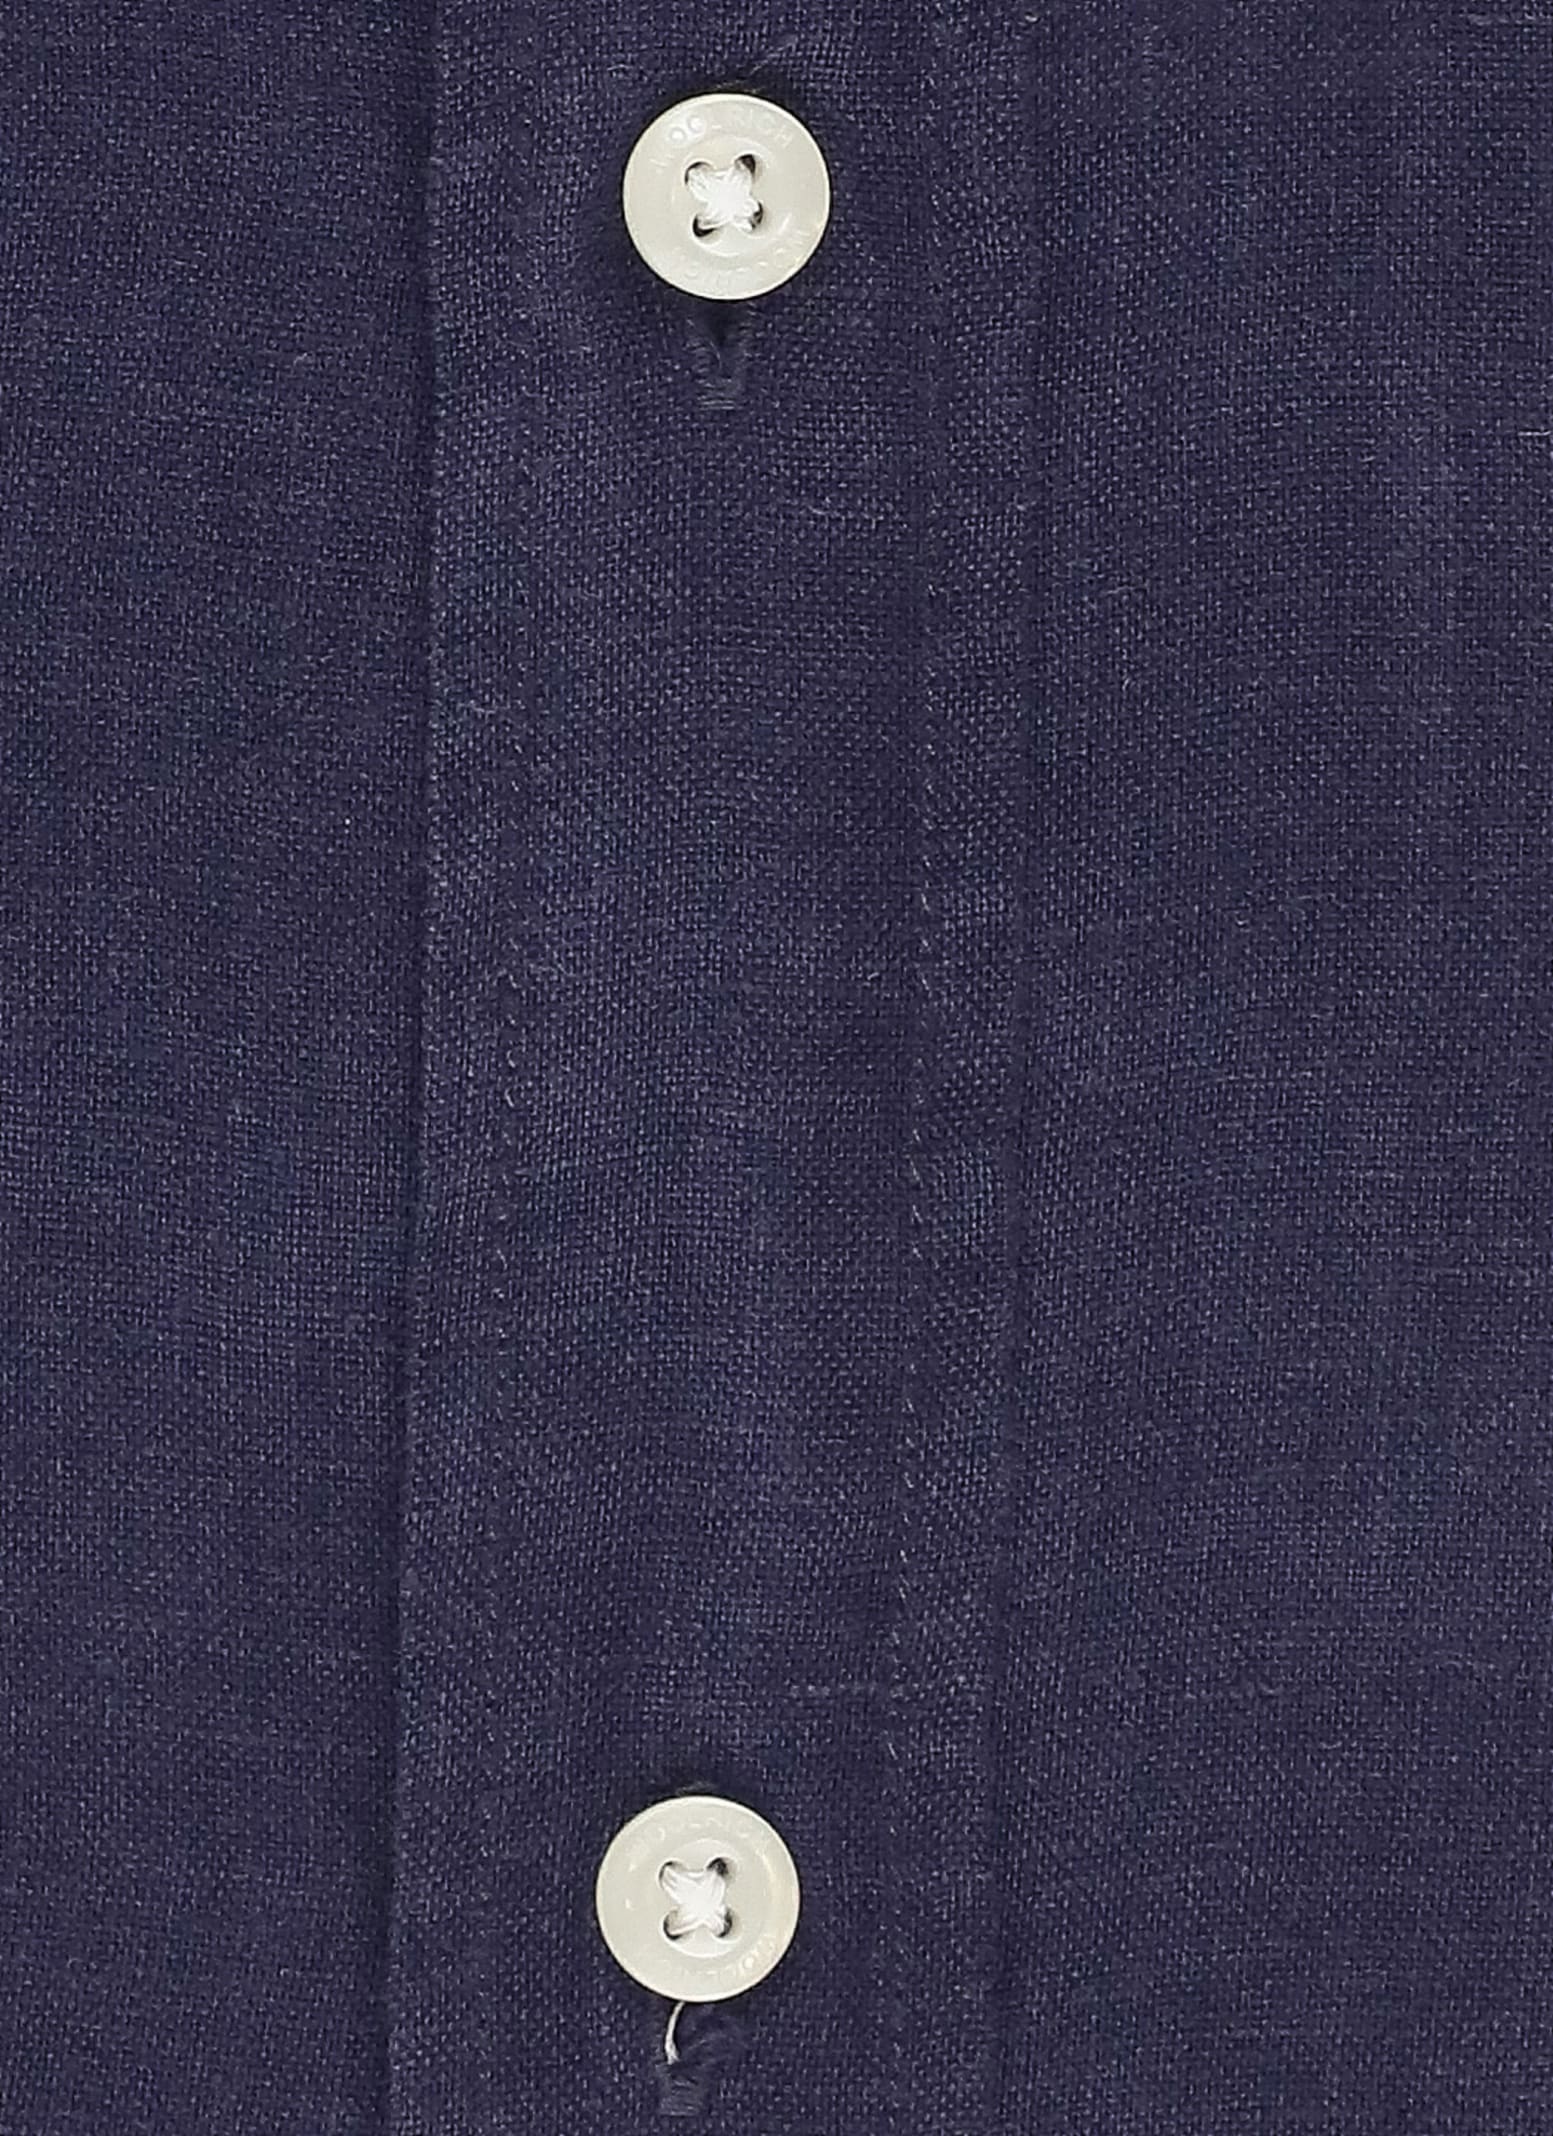 Shop Woolrich Linen Shirt In Blue